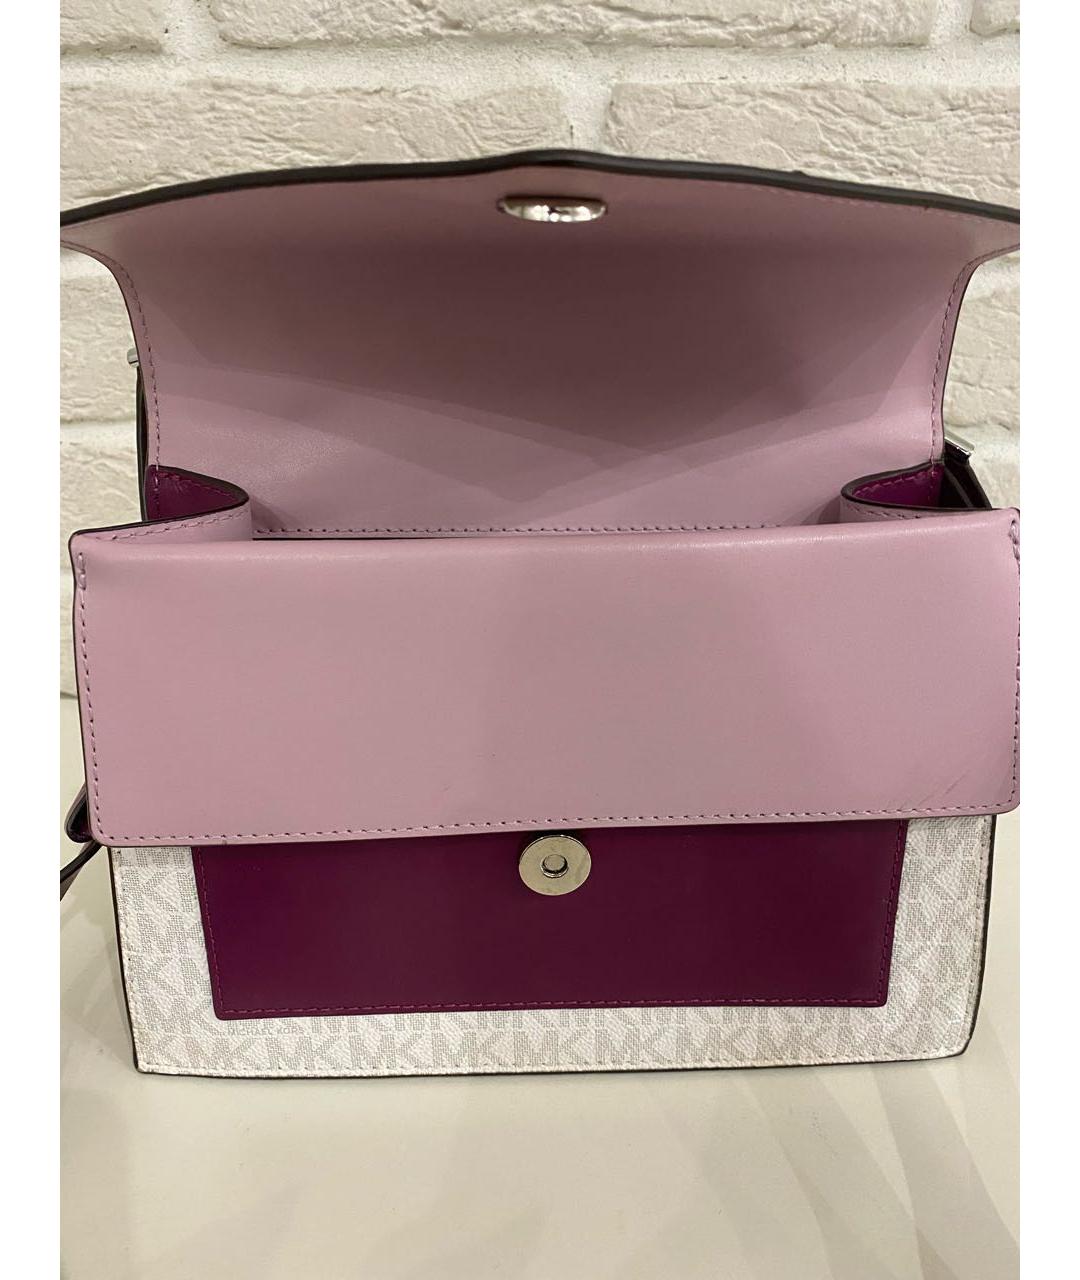 MICHAEL KORS Фиолетовая кожаная сумка через плечо, фото 5